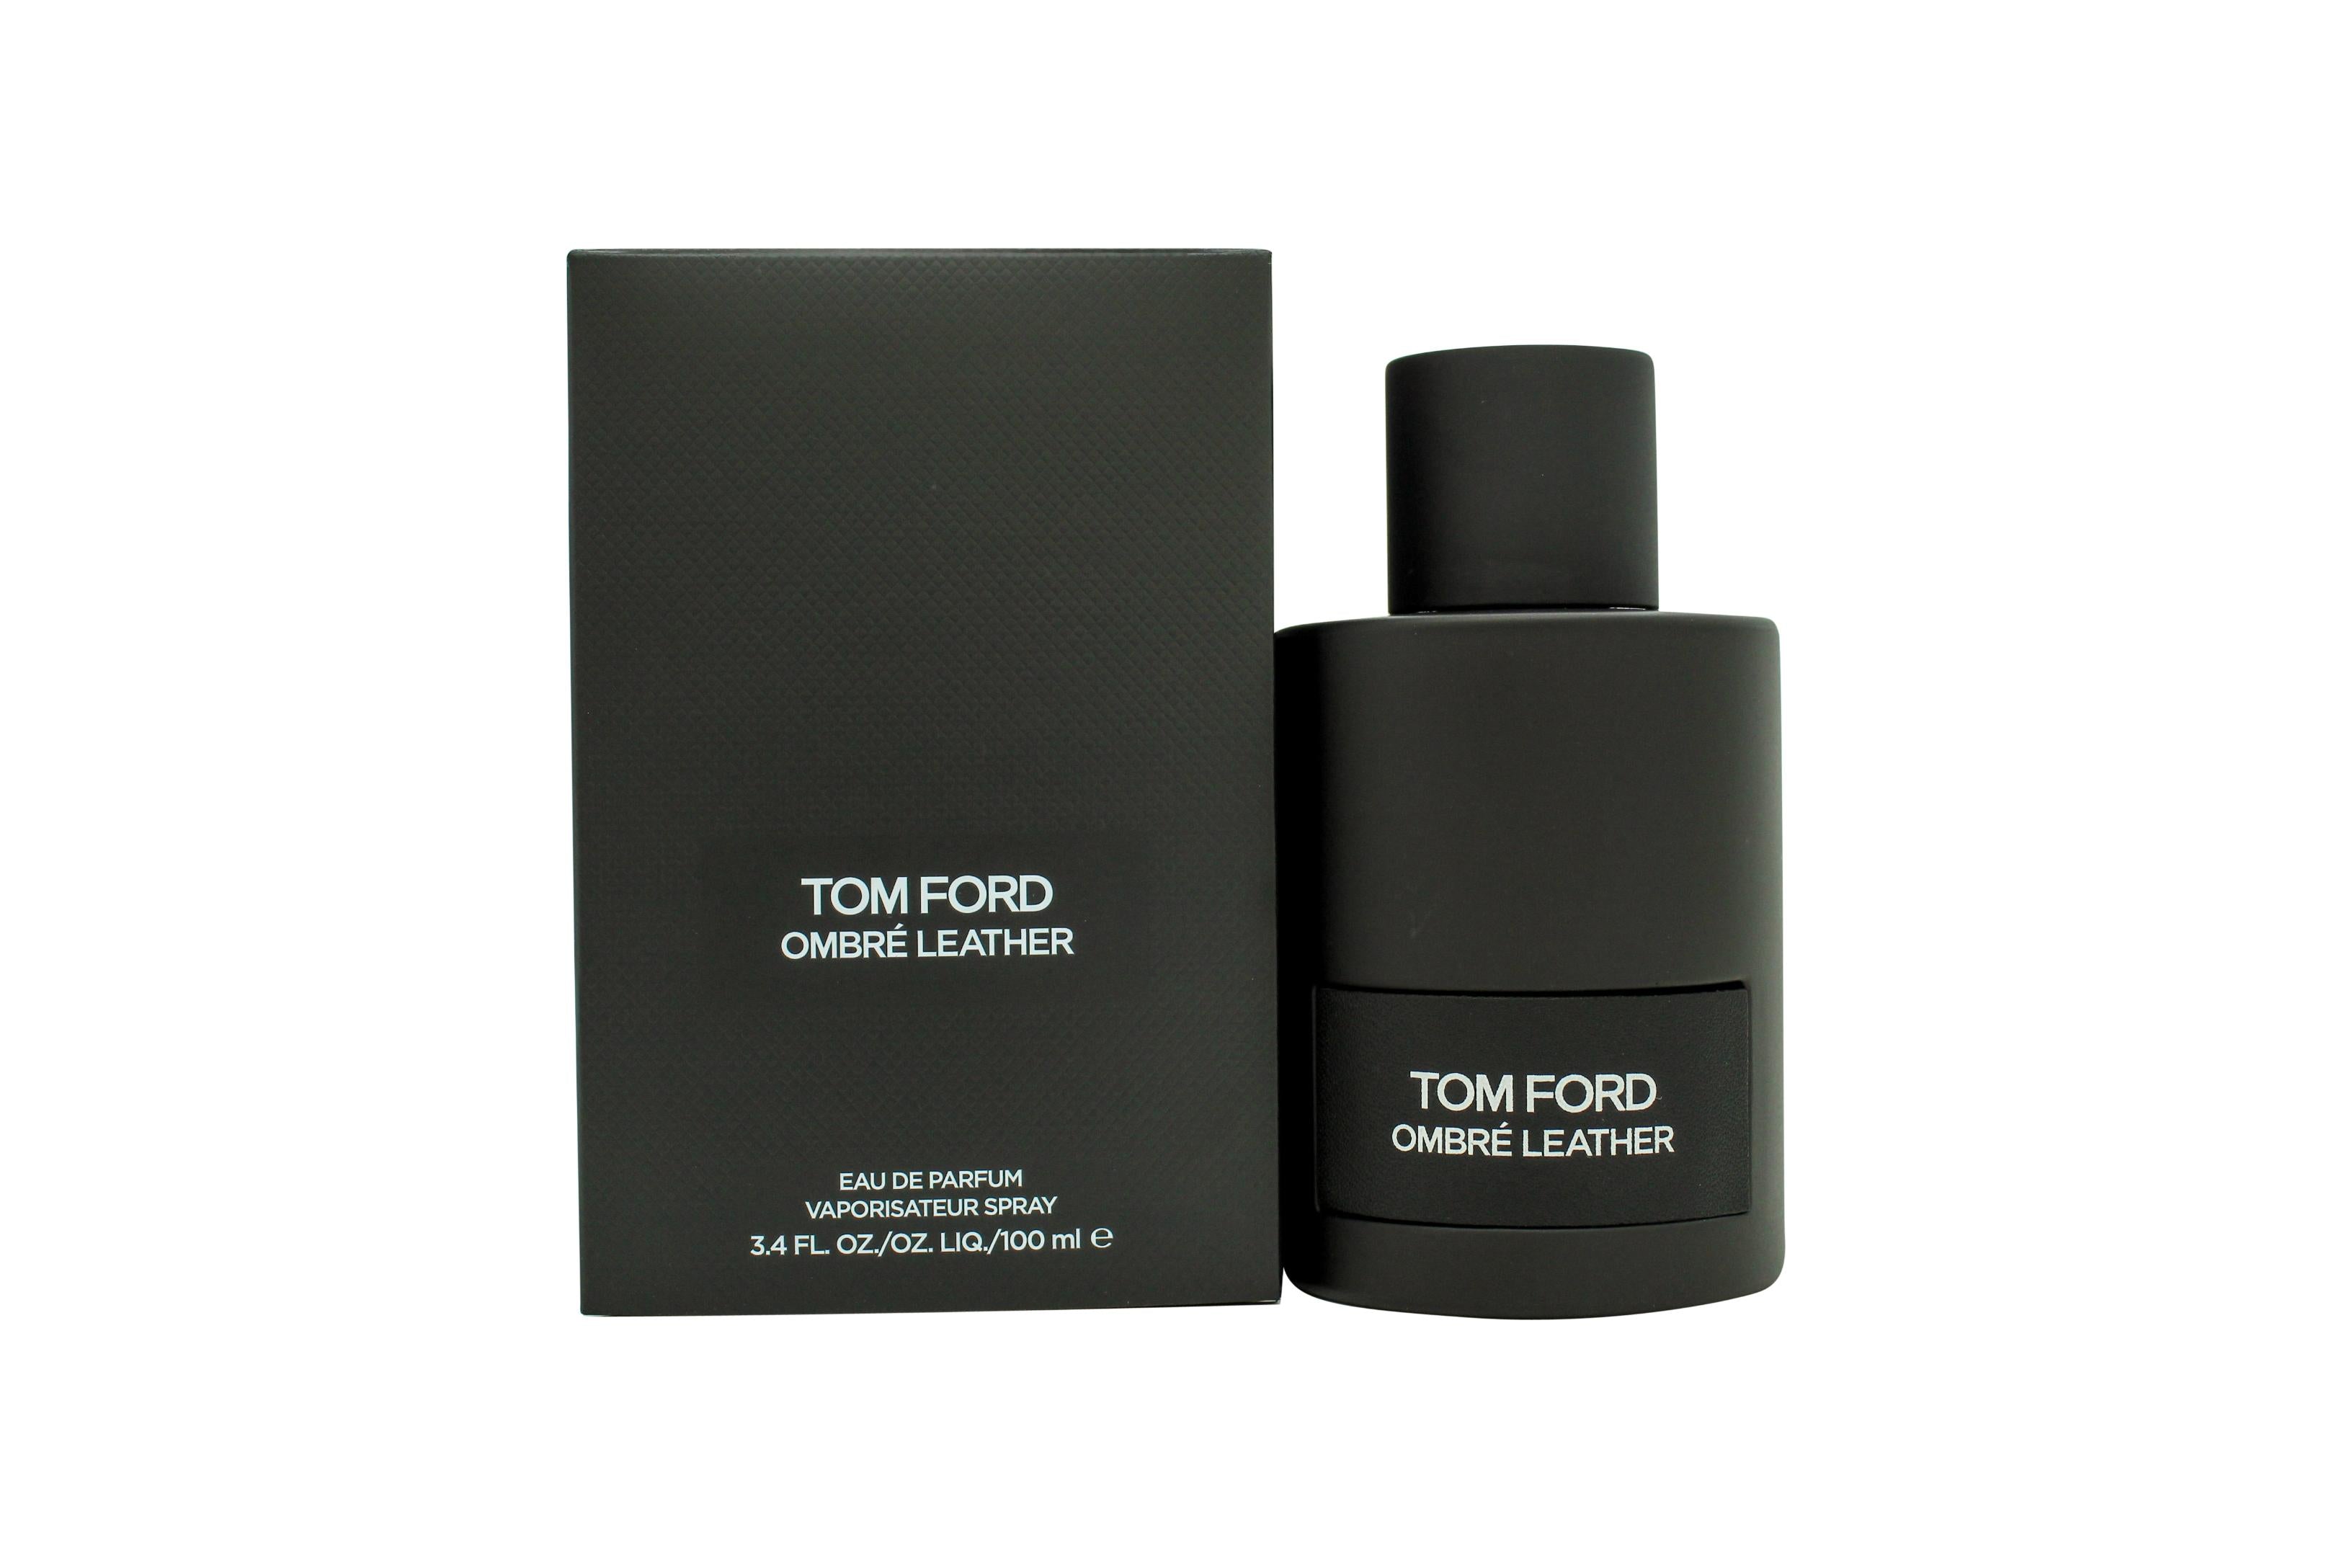 View Tom Ford Ombré Leather Eau de Parfum 100ml Spray information